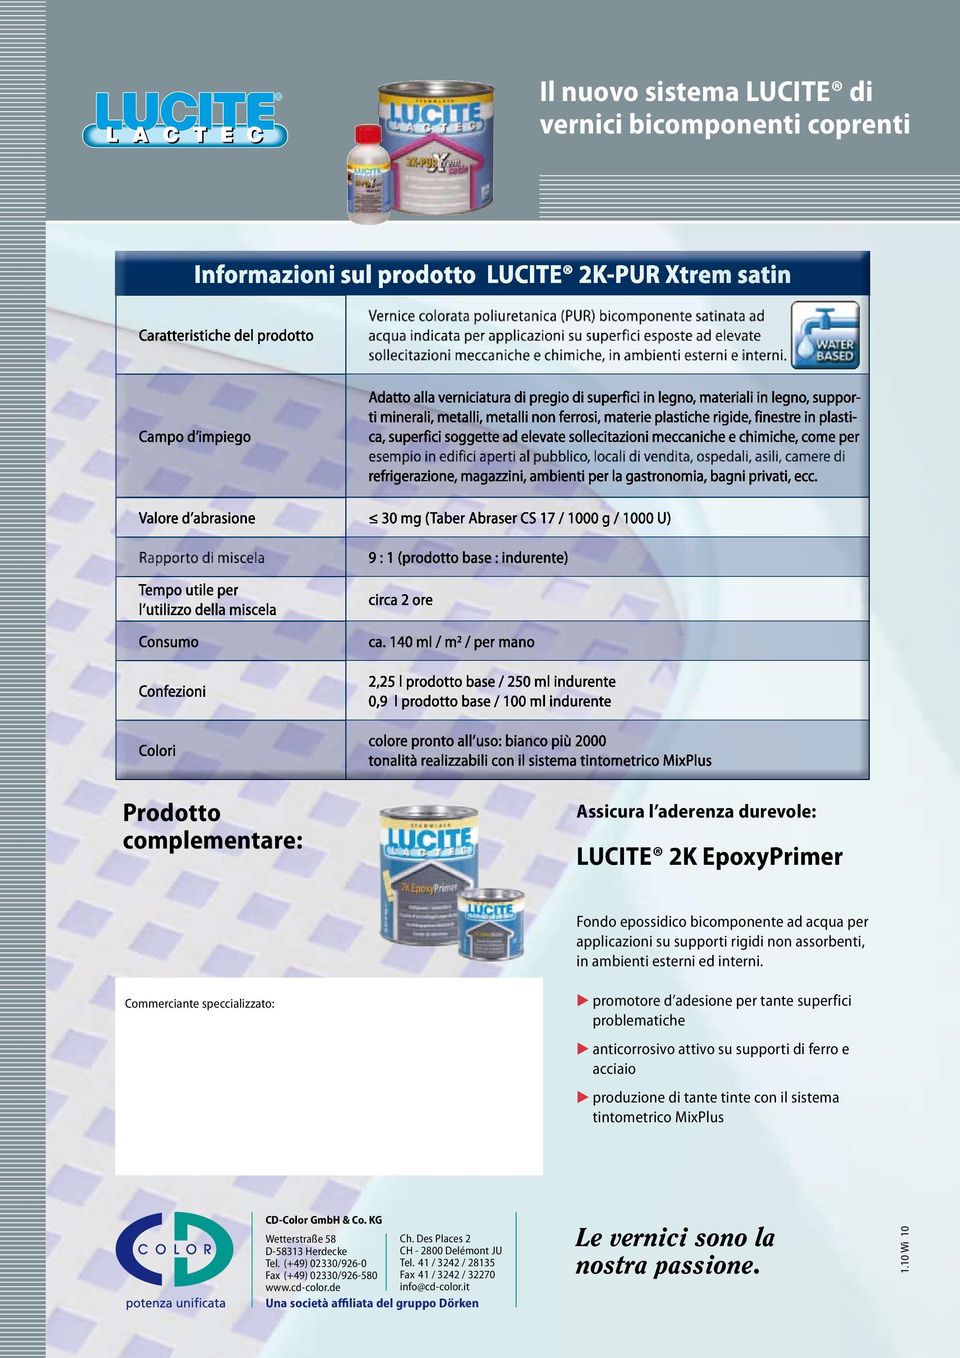 promotore d adesione per tante superfici problematiche Commerciante speccializzato: anticorrosivo attivo su supporti di ferro e acciaio CD-Color GmbH & Co.